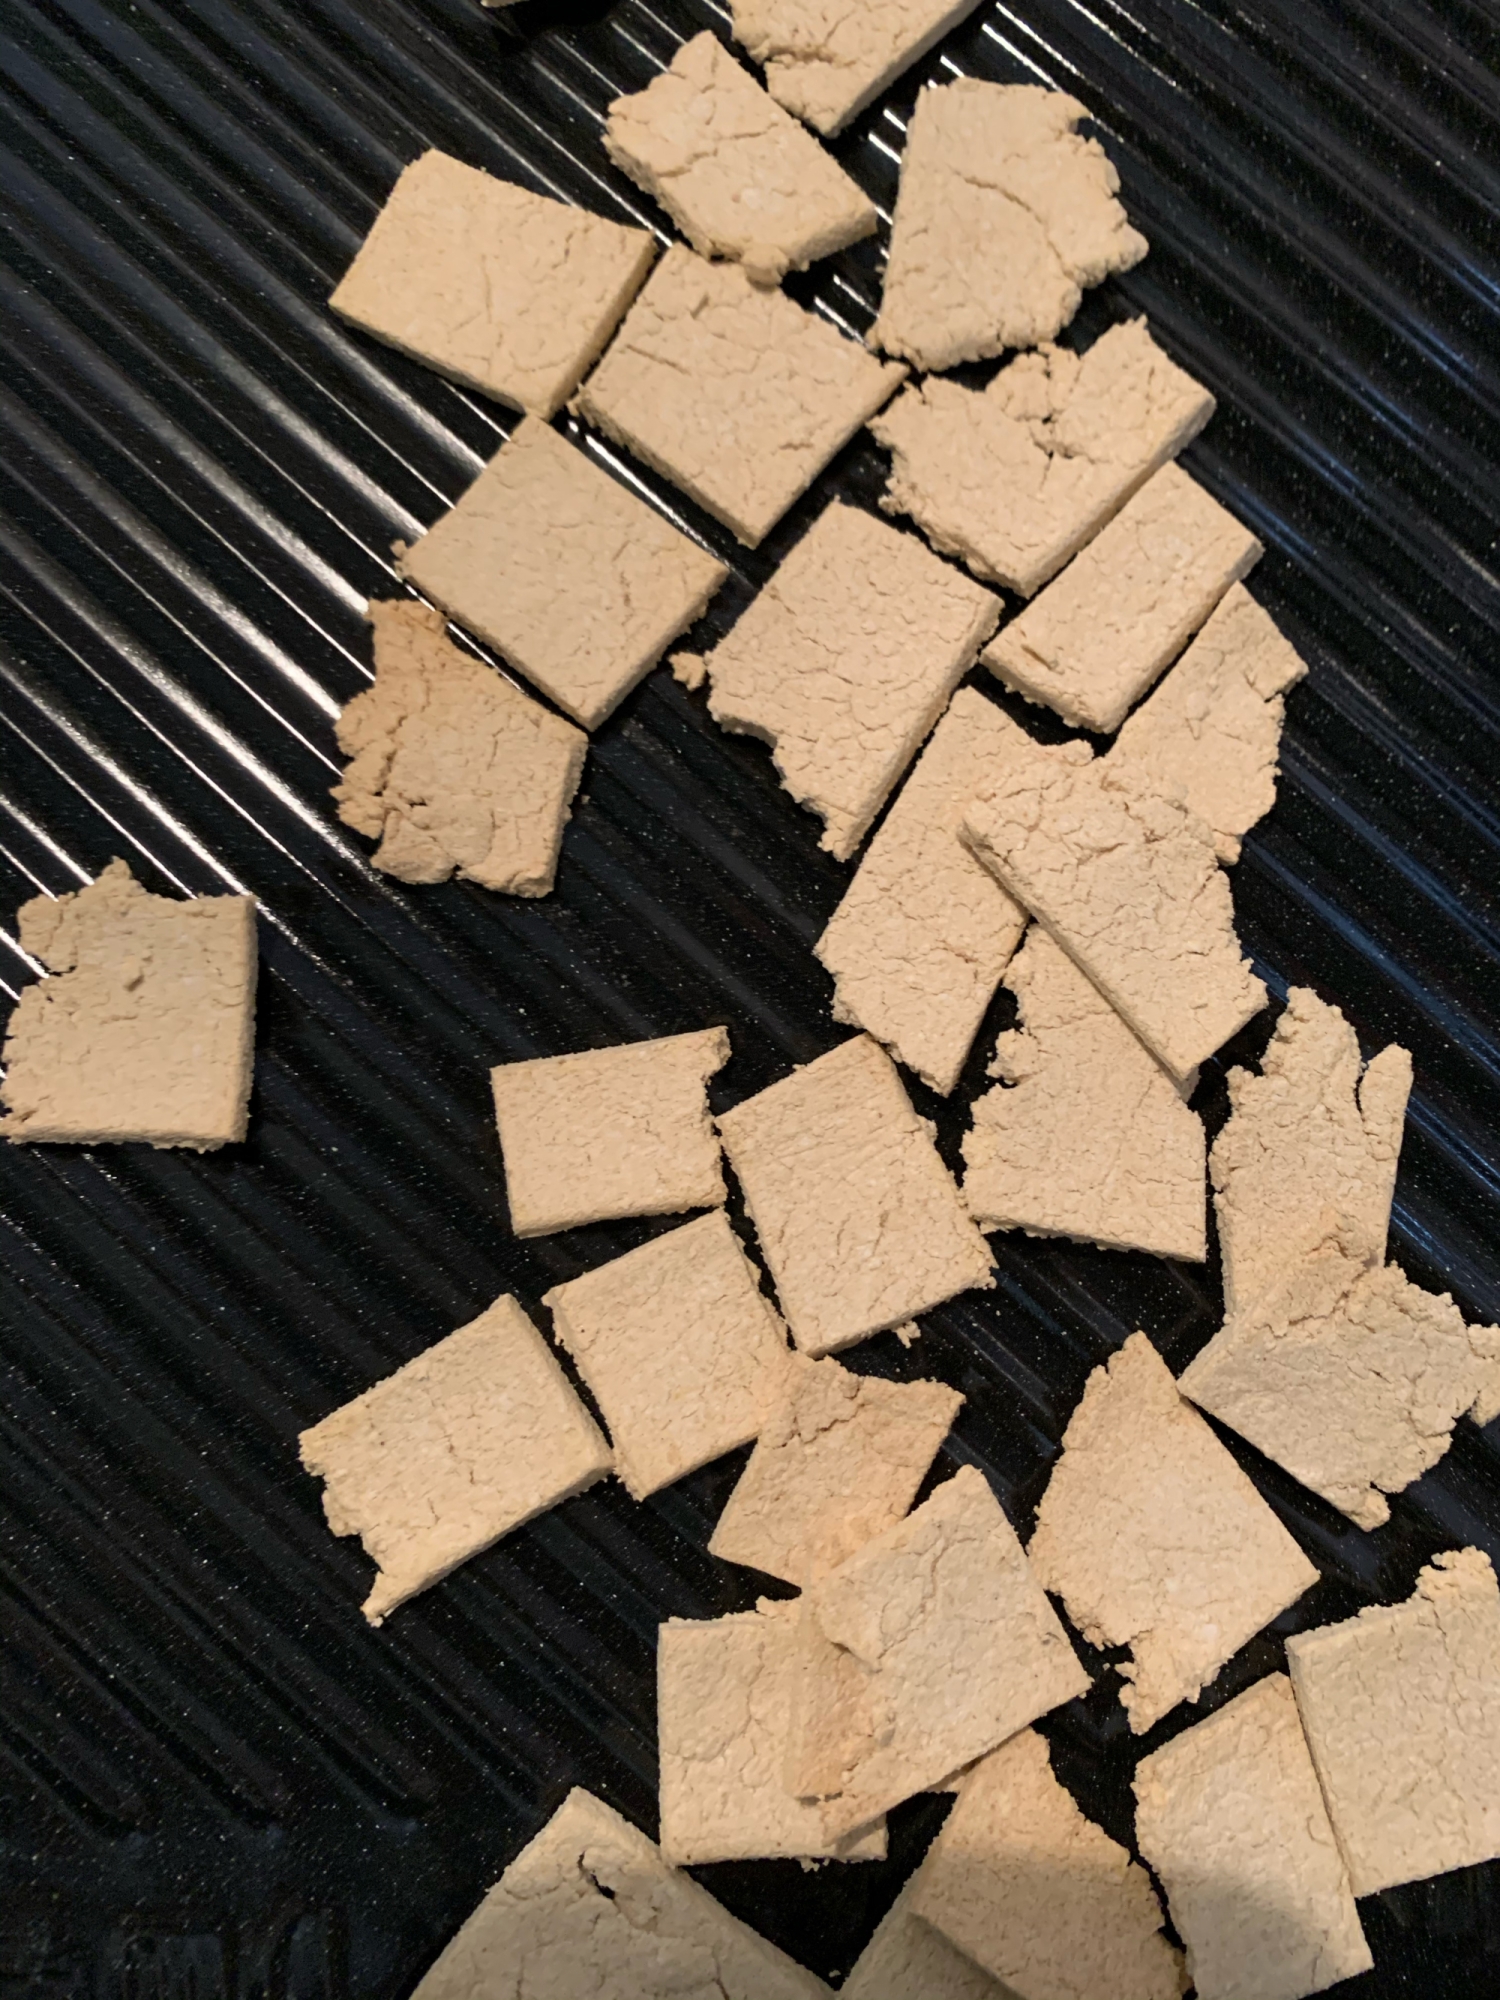 ノンオイル・ノンエッグおから豆腐クッキー